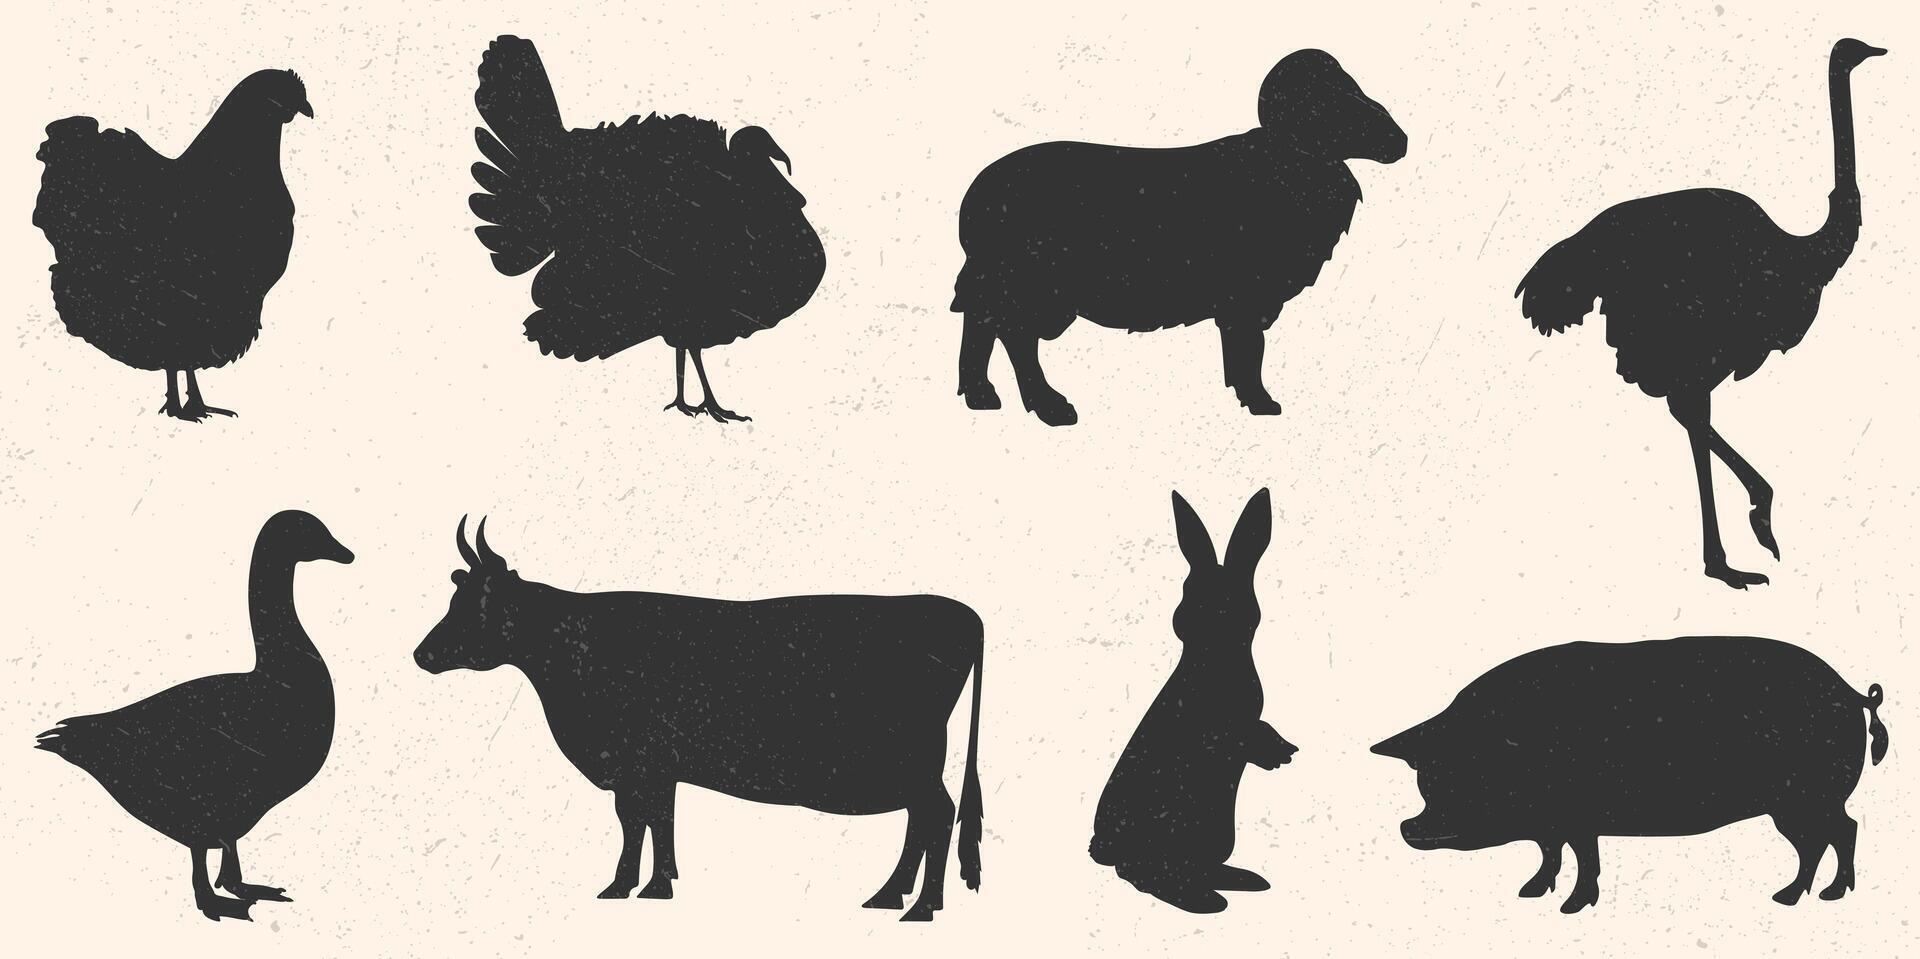 ikon för logotyp, illustration av bruka djur och fåglar. silhuett av kanin, ko, Bagge, gris, struts, Kalkon, kyckling och gås. vektor eps 10 med grunge textur